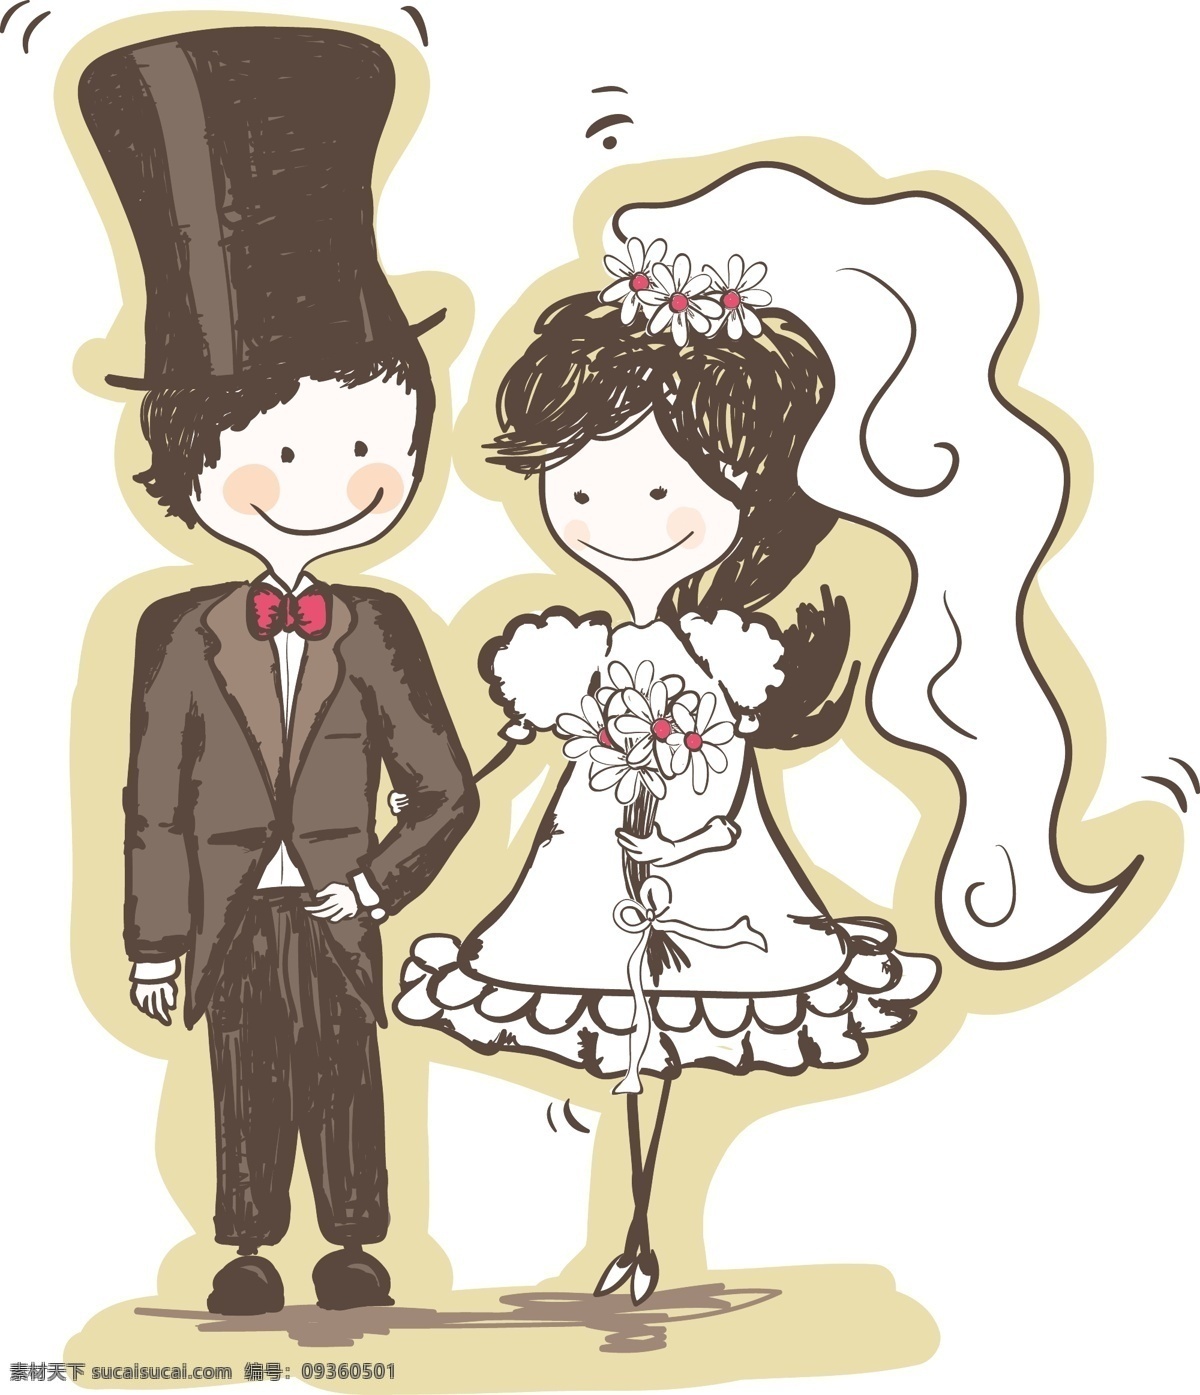 可爱 手工 绘制 的卡 通 新娘 新郎 矢量 爱情 材料 婚礼 婚姻 卡通 可爱的 人物 手 手绘 线 甜的 拉 矢量图 矢量人物